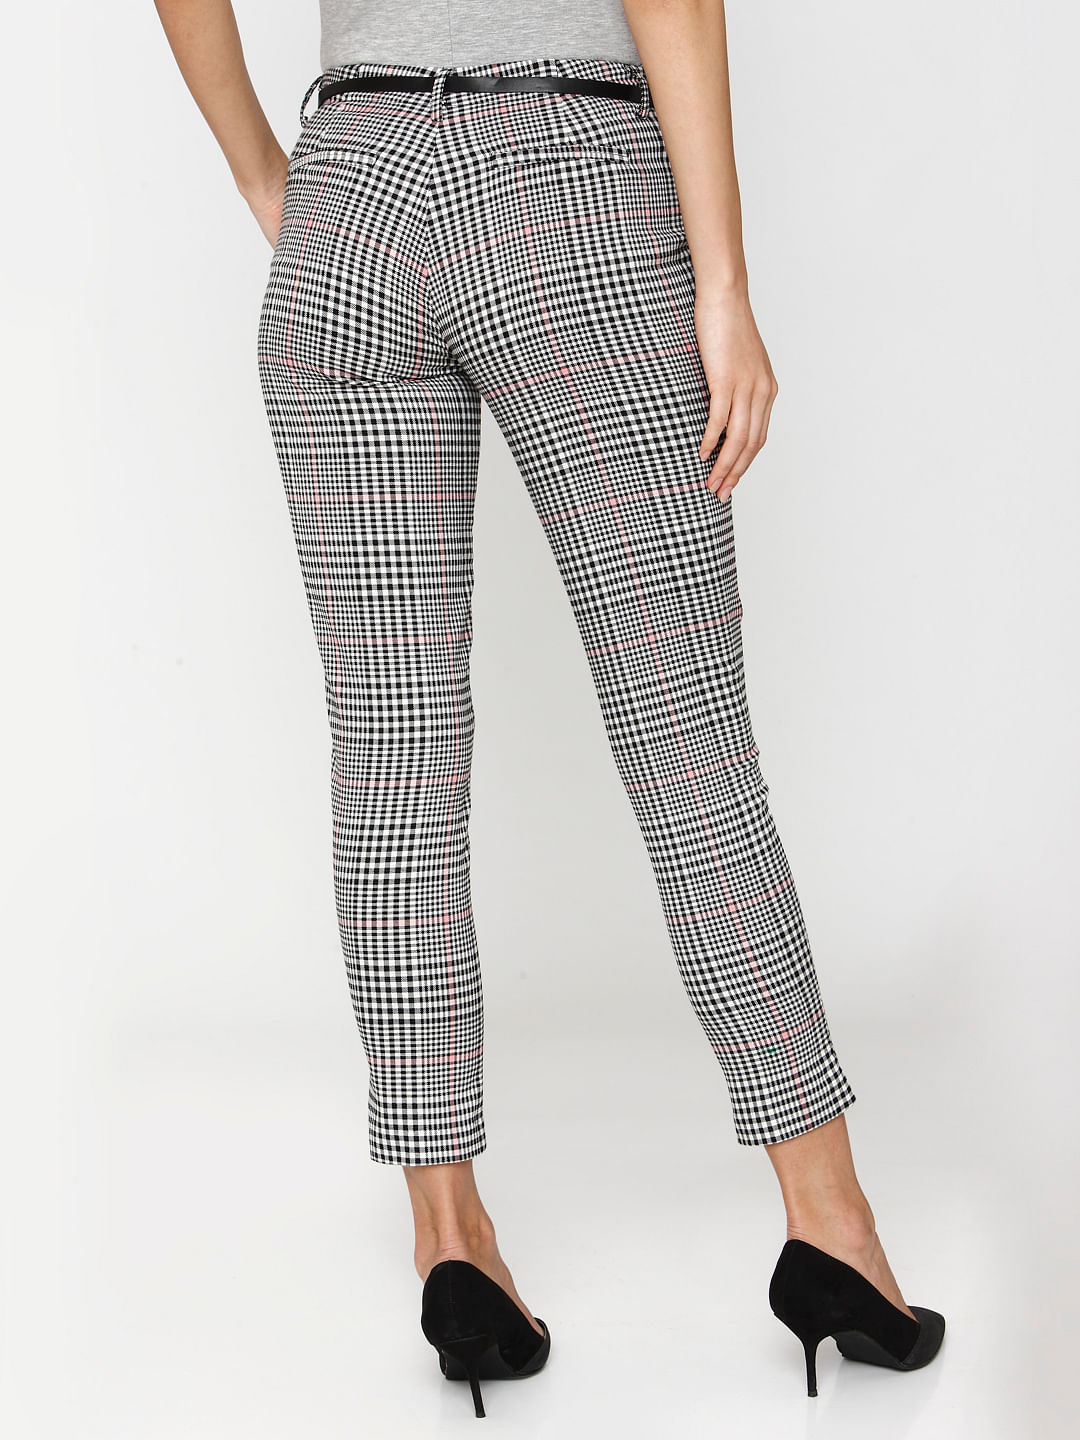 Ankle-length Pants - Dark gray - Ladies | H&M US